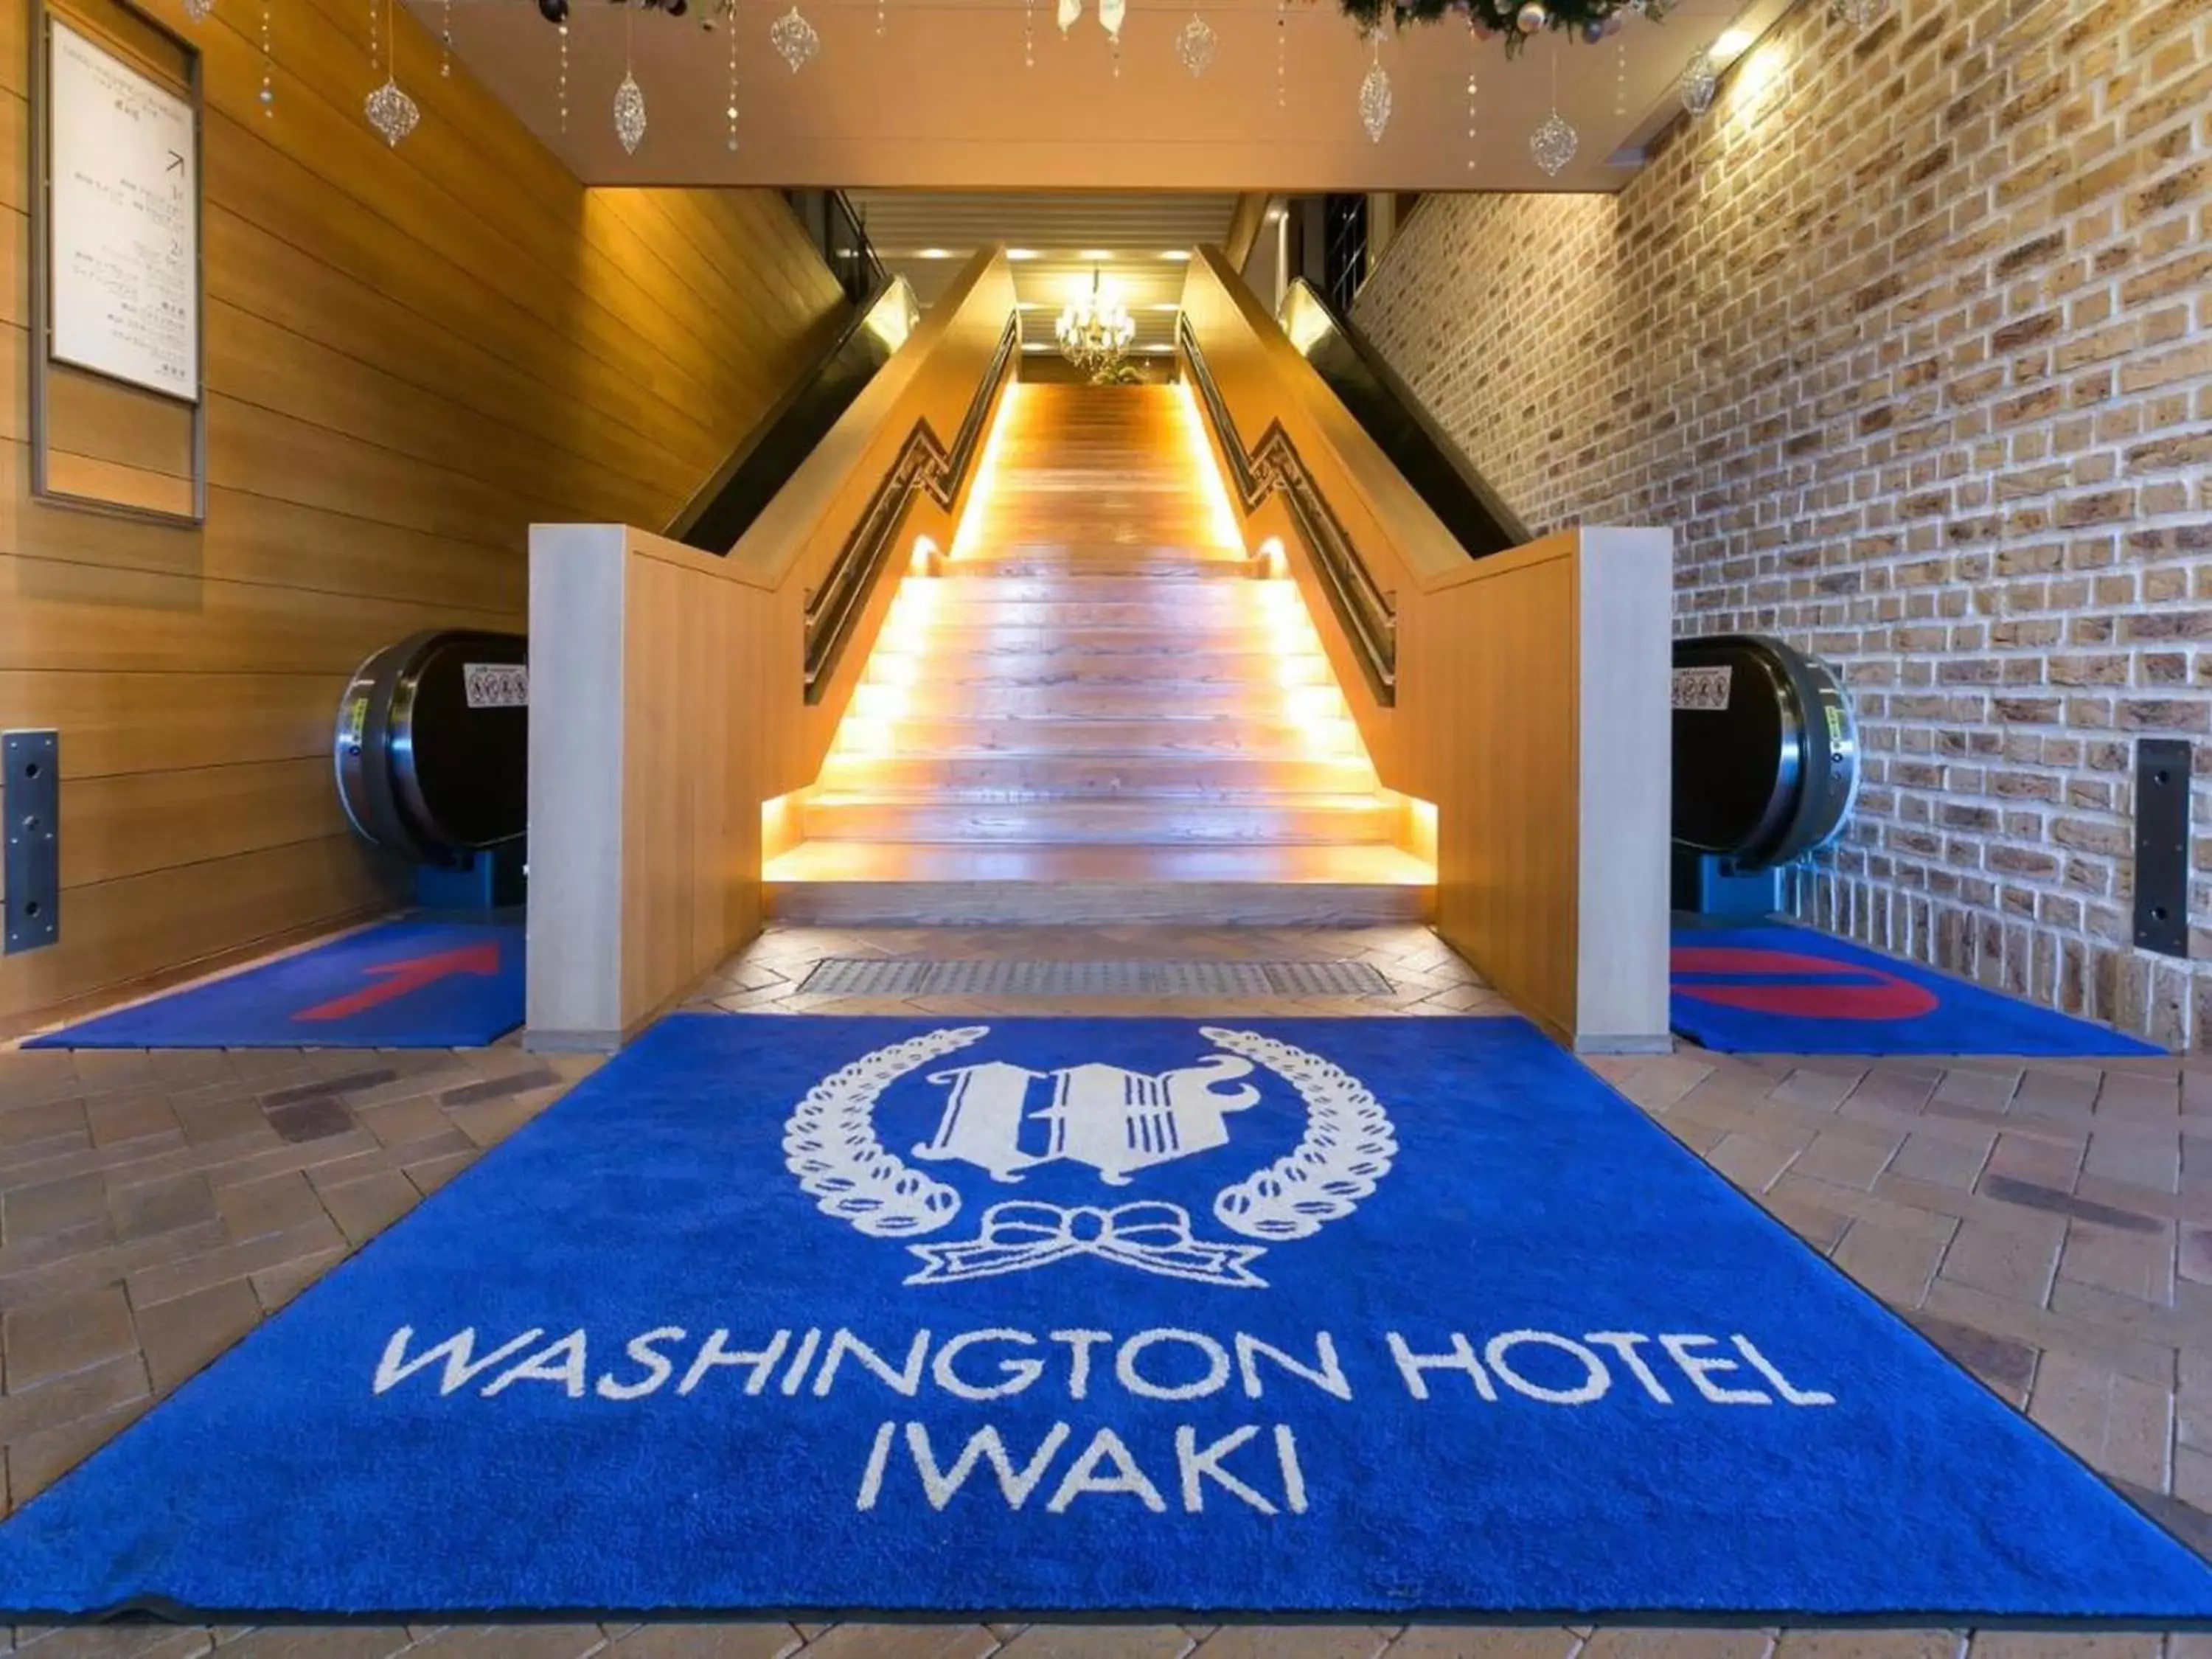 Facade/entrance in Iwaki Washington Hotel